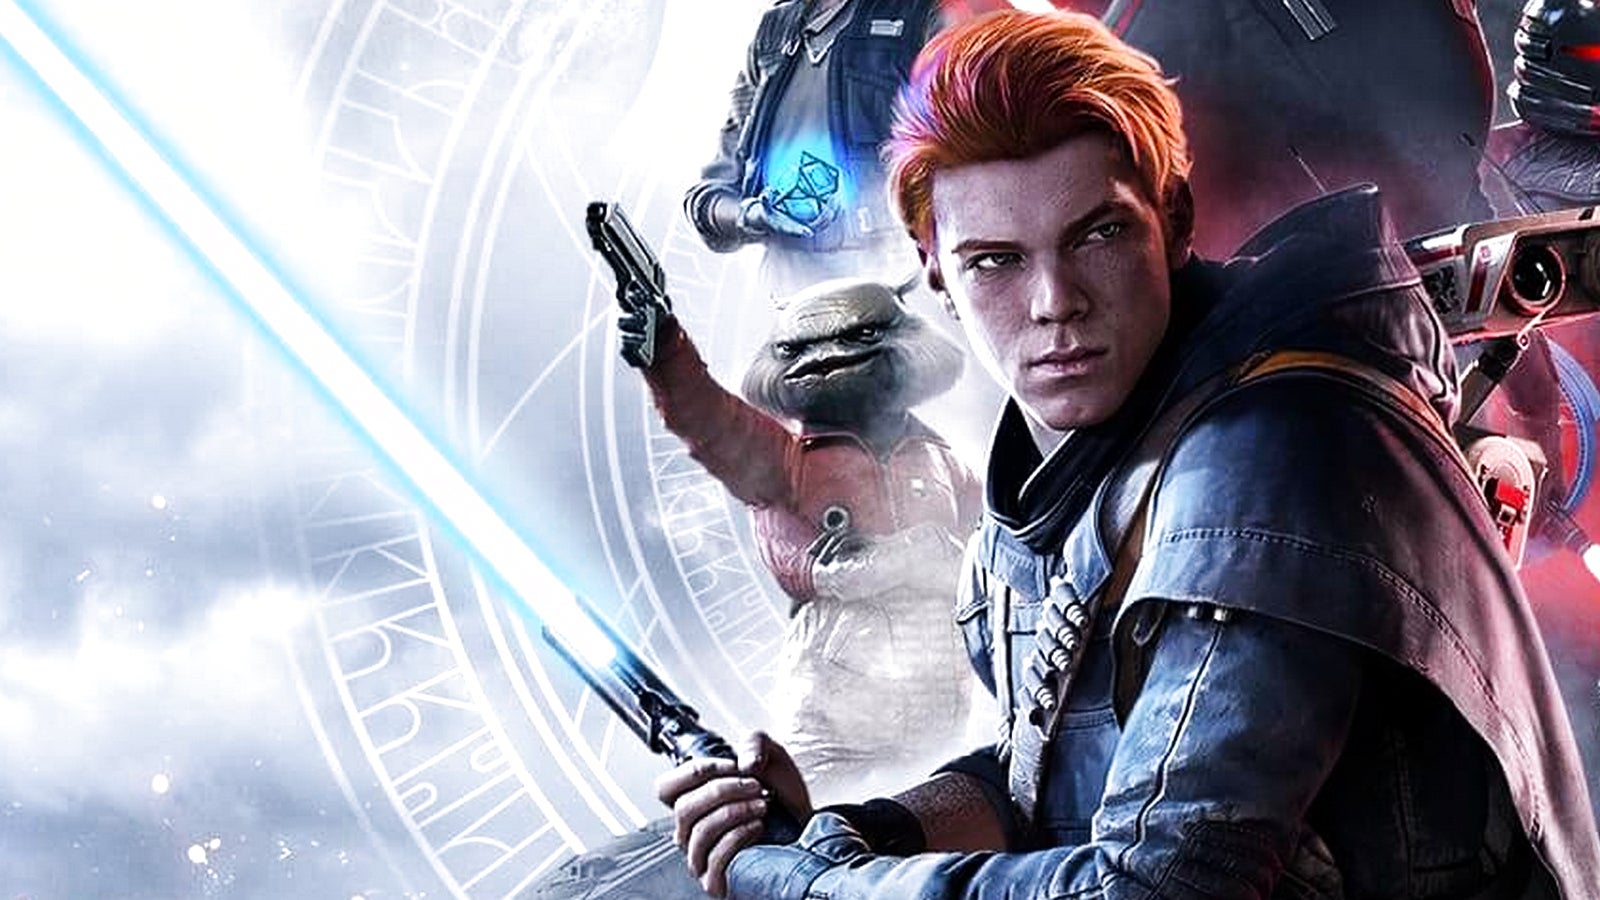 Bilder zu Star Wars Jedi: Fallen Order und Total War Warhammer geschenkt! Prime Gaming startet ins Jahr 2022